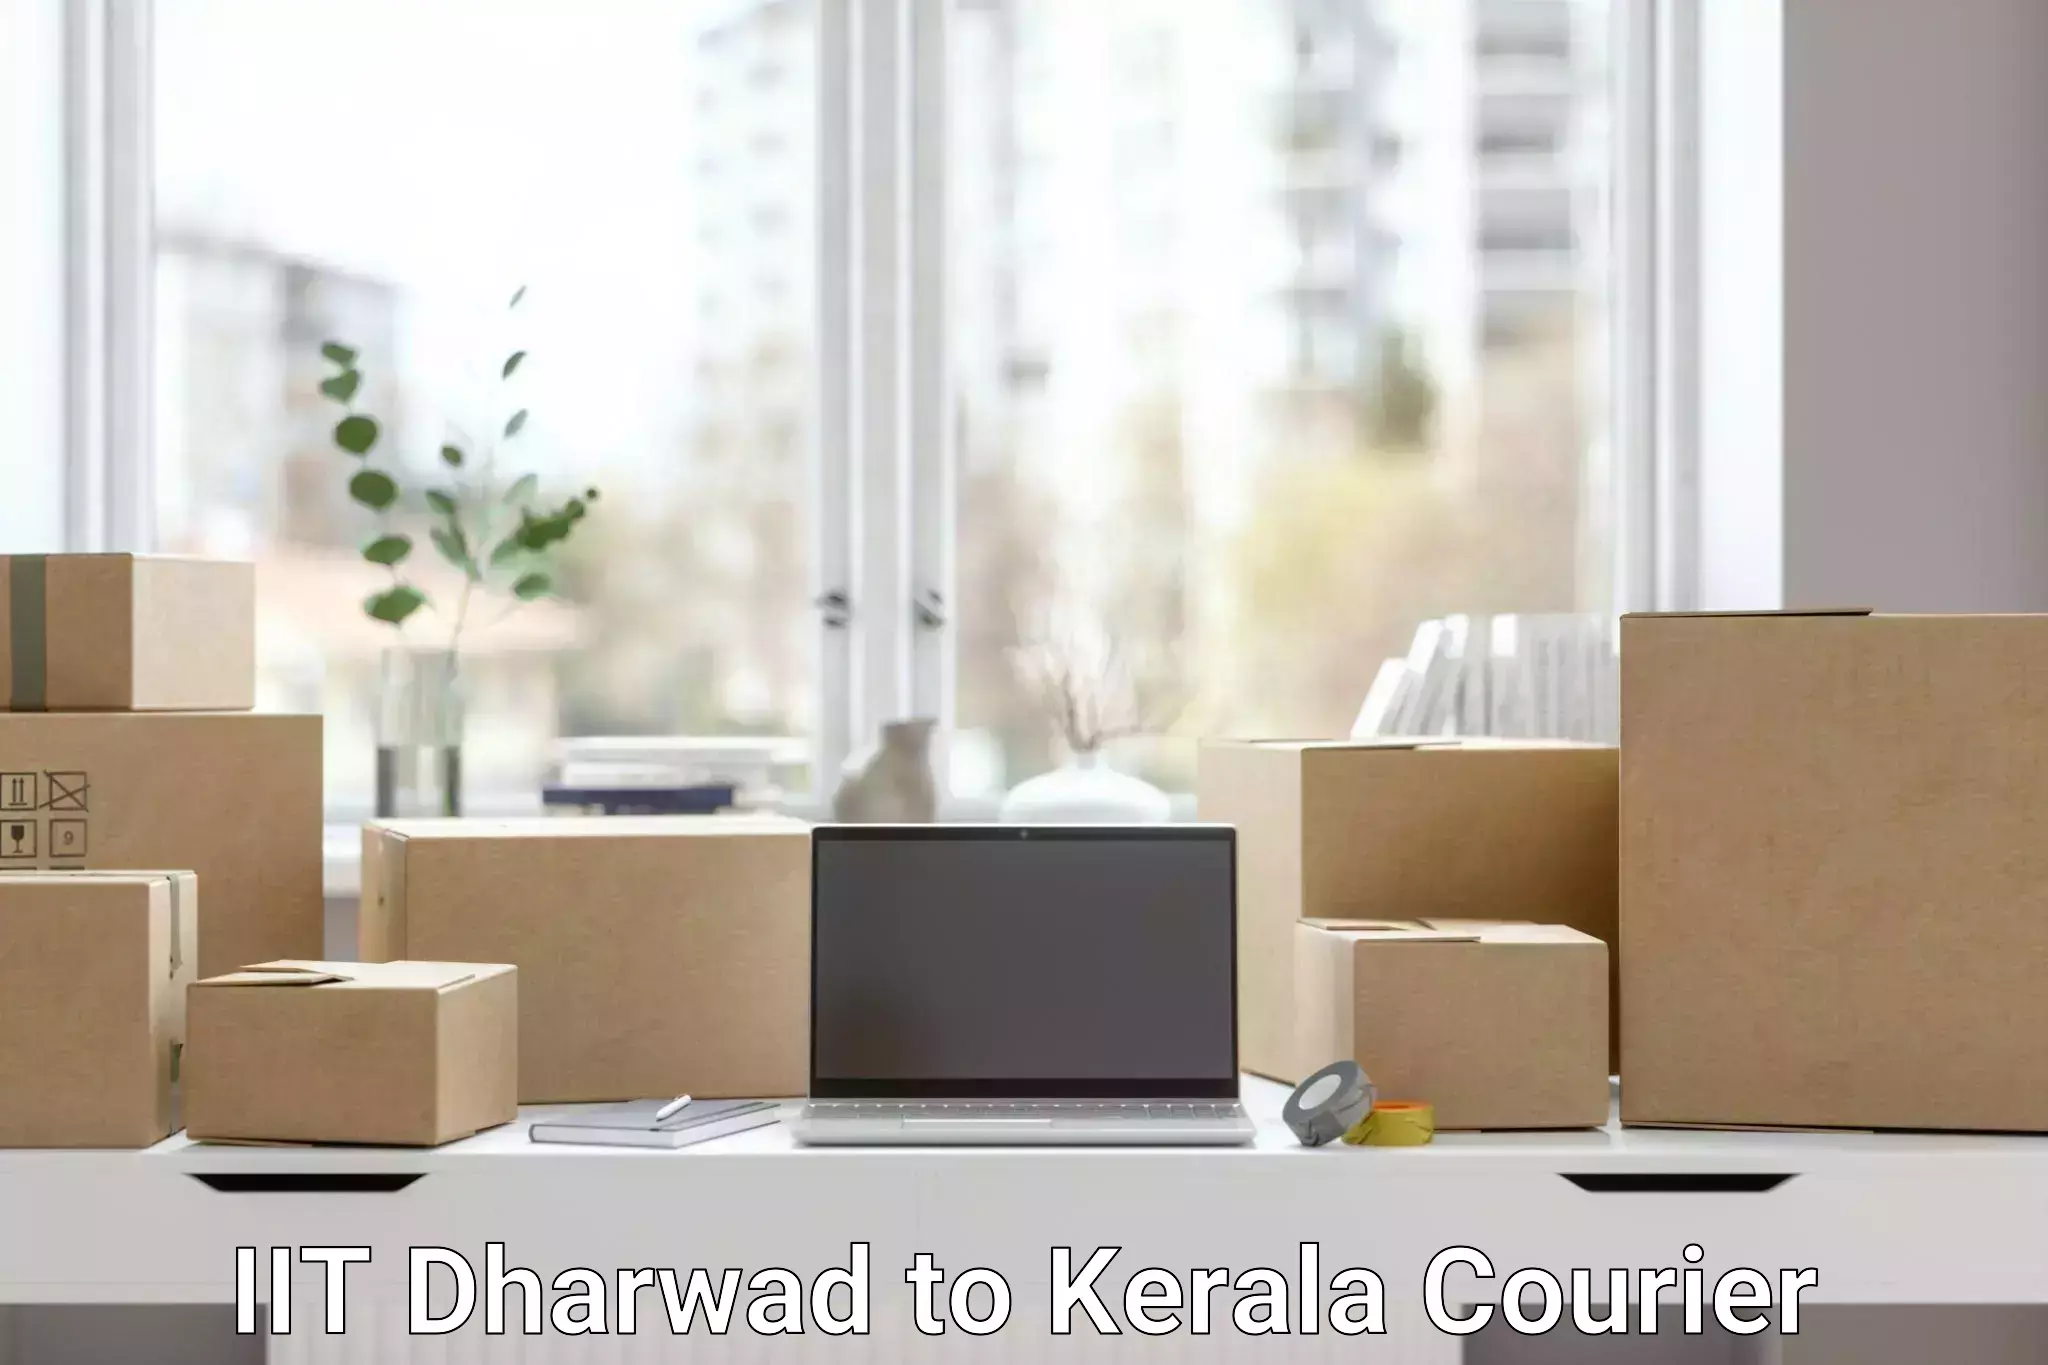 Customer-focused courier IIT Dharwad to Koothattukulam